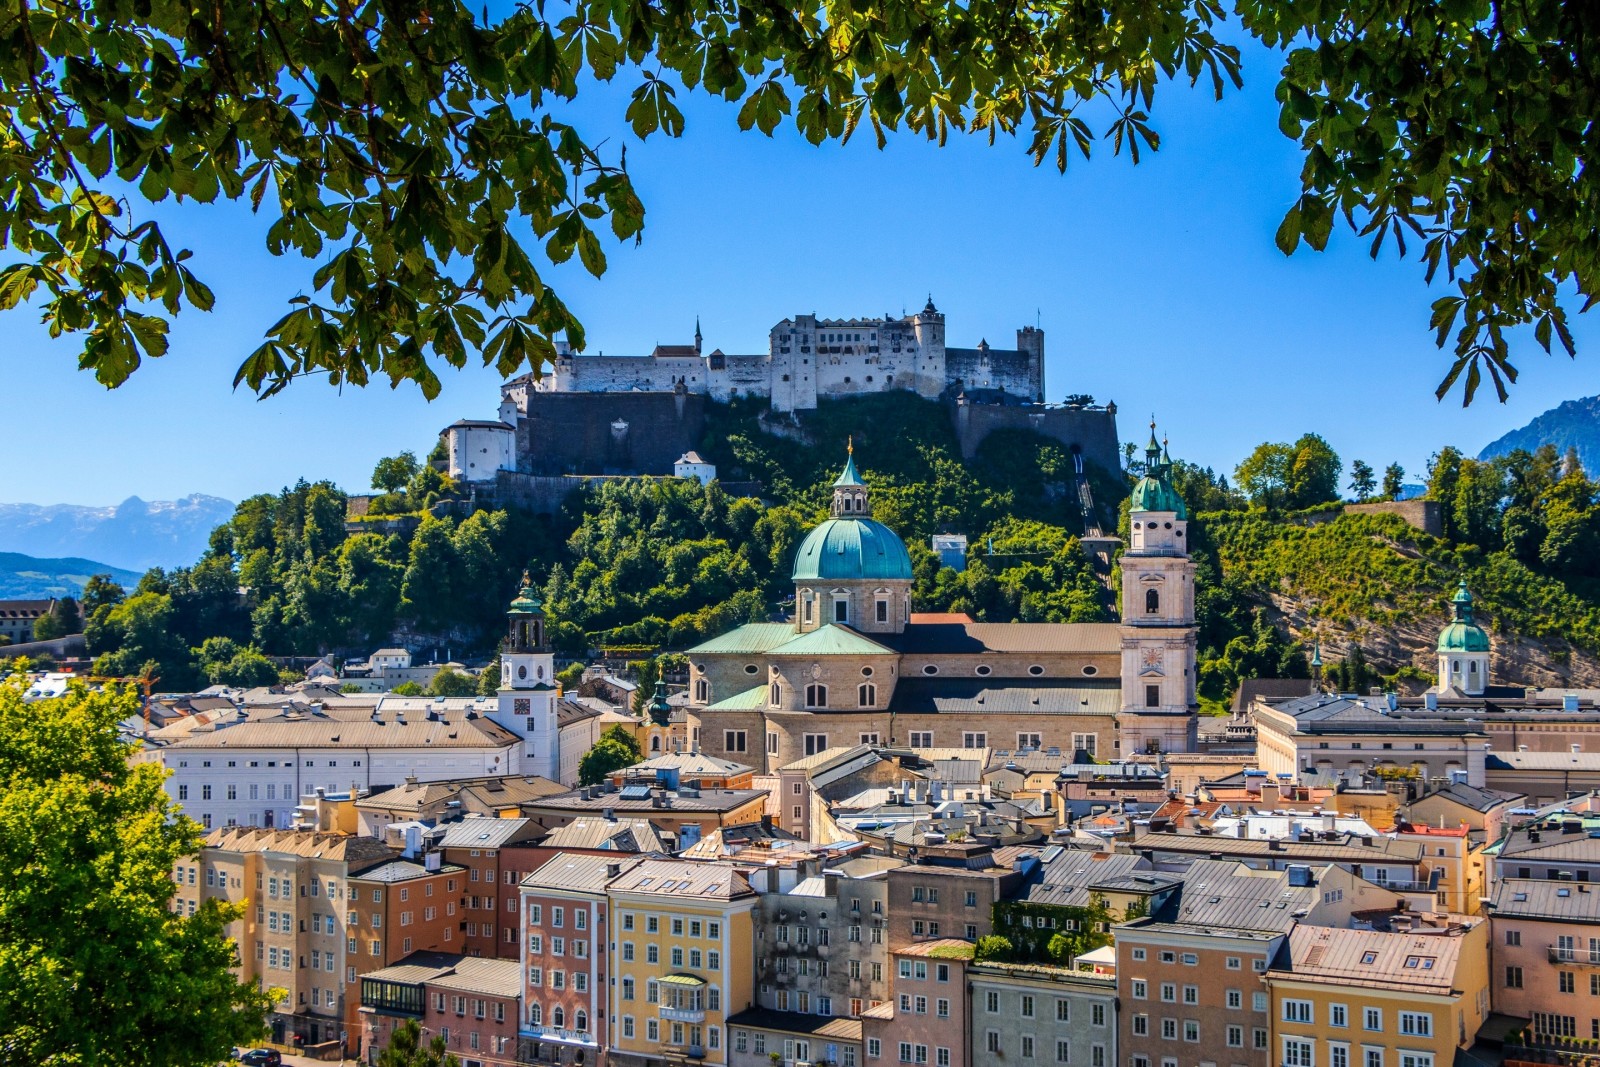 chi nhánh, Pháo đài, bức tranh toàn cảnh, xây dựng, Áo, Salzburg, Pháo đài Hohensalzburg, Nhà thờ lớn